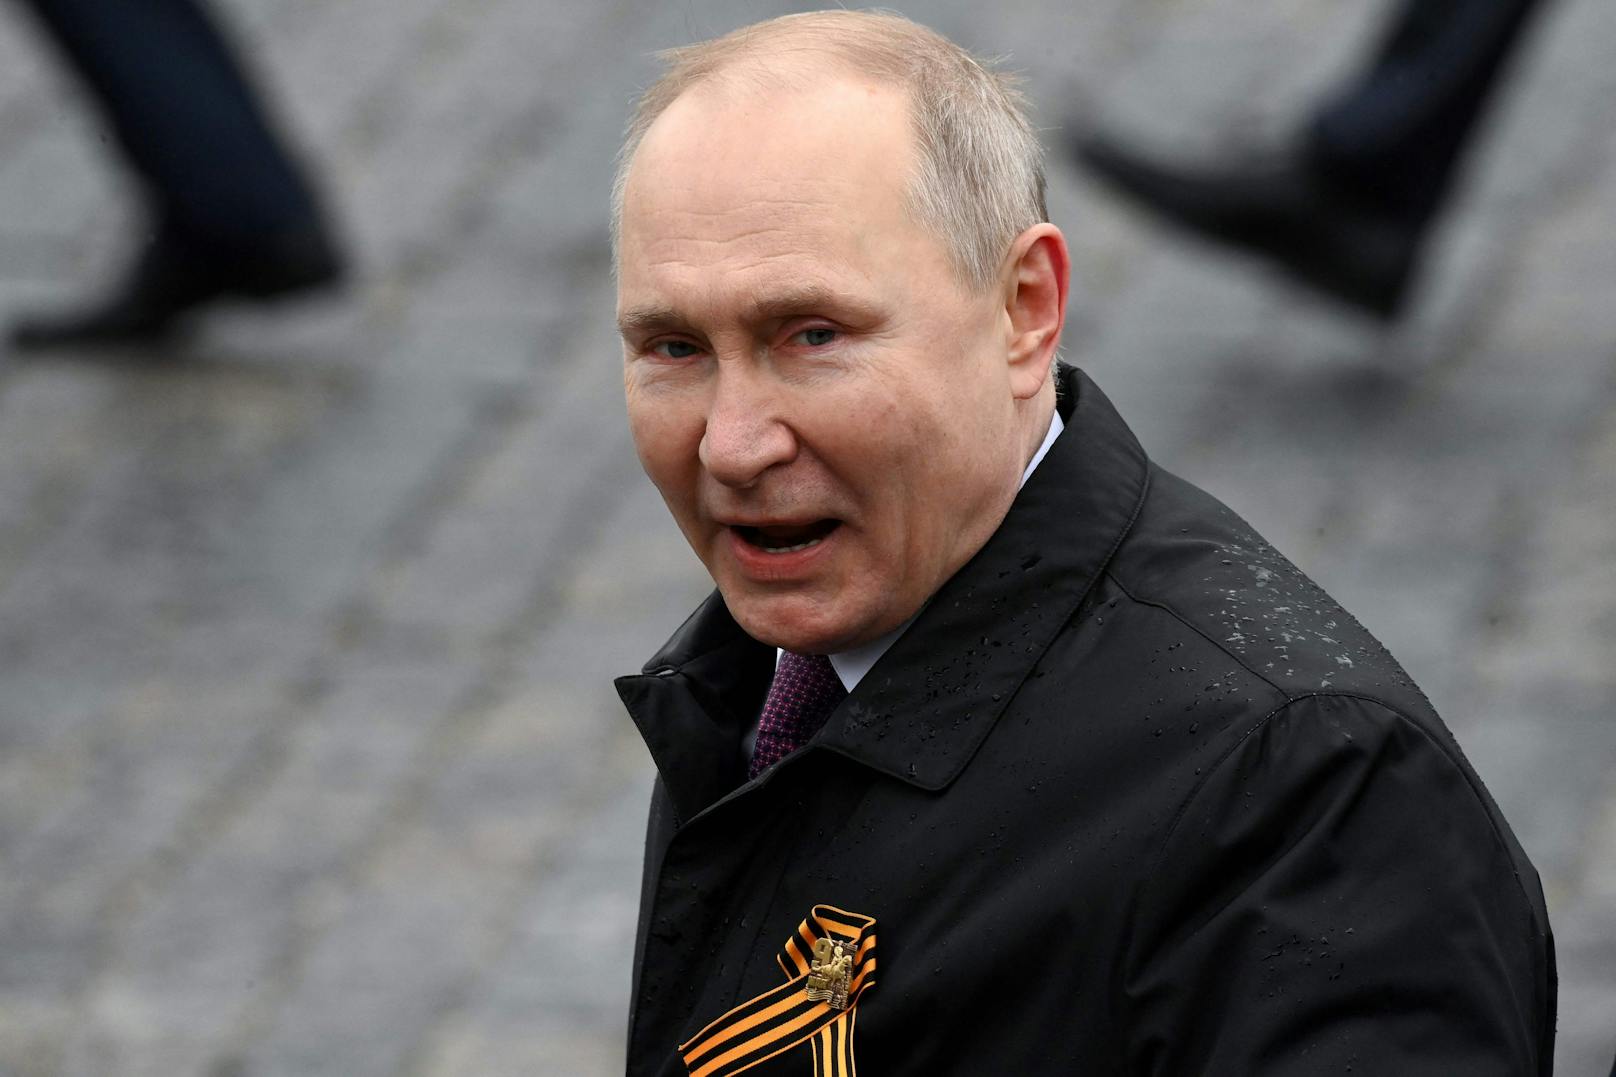 Der deutsche Bundeskanzler Olaf Scholz richtet eine Warnung an Russlands Präsidenten Wladimir Putin.